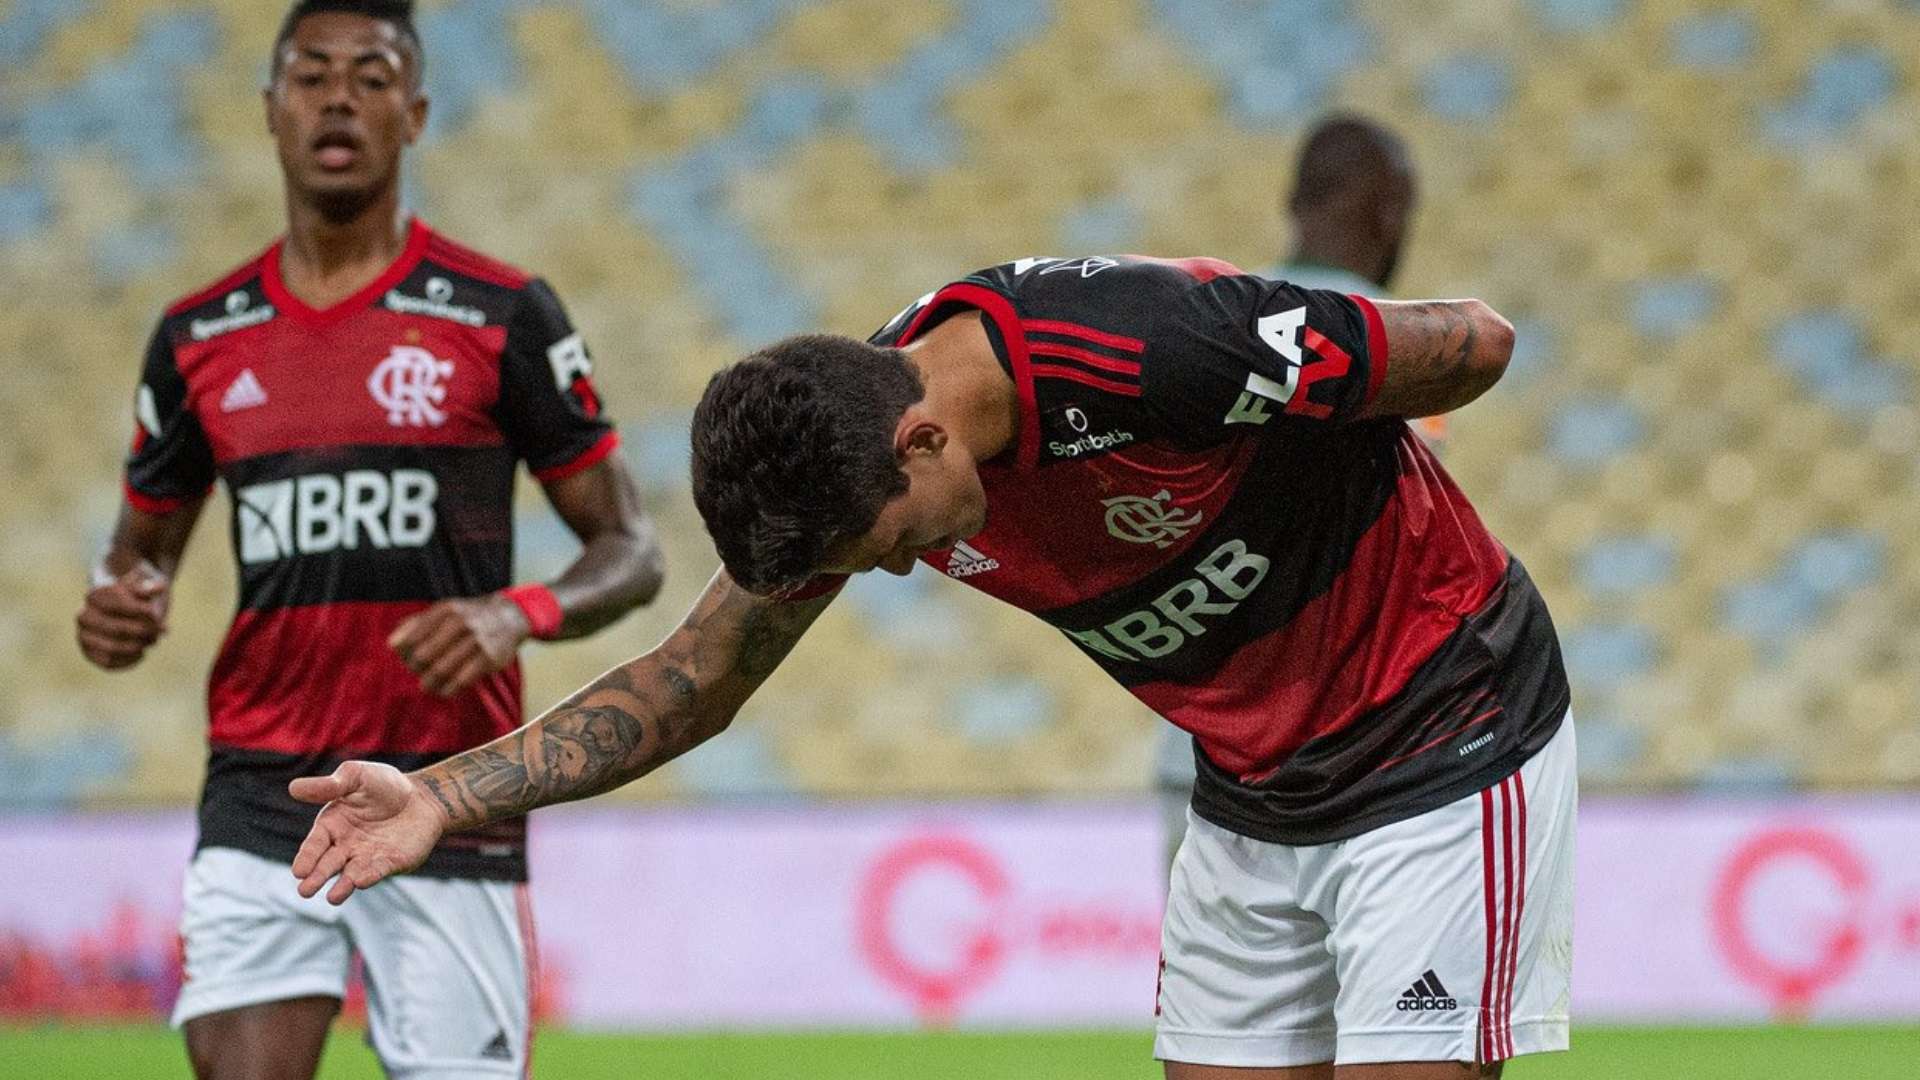 Pedro Flamengo Boavista Carioca 01 07 2020